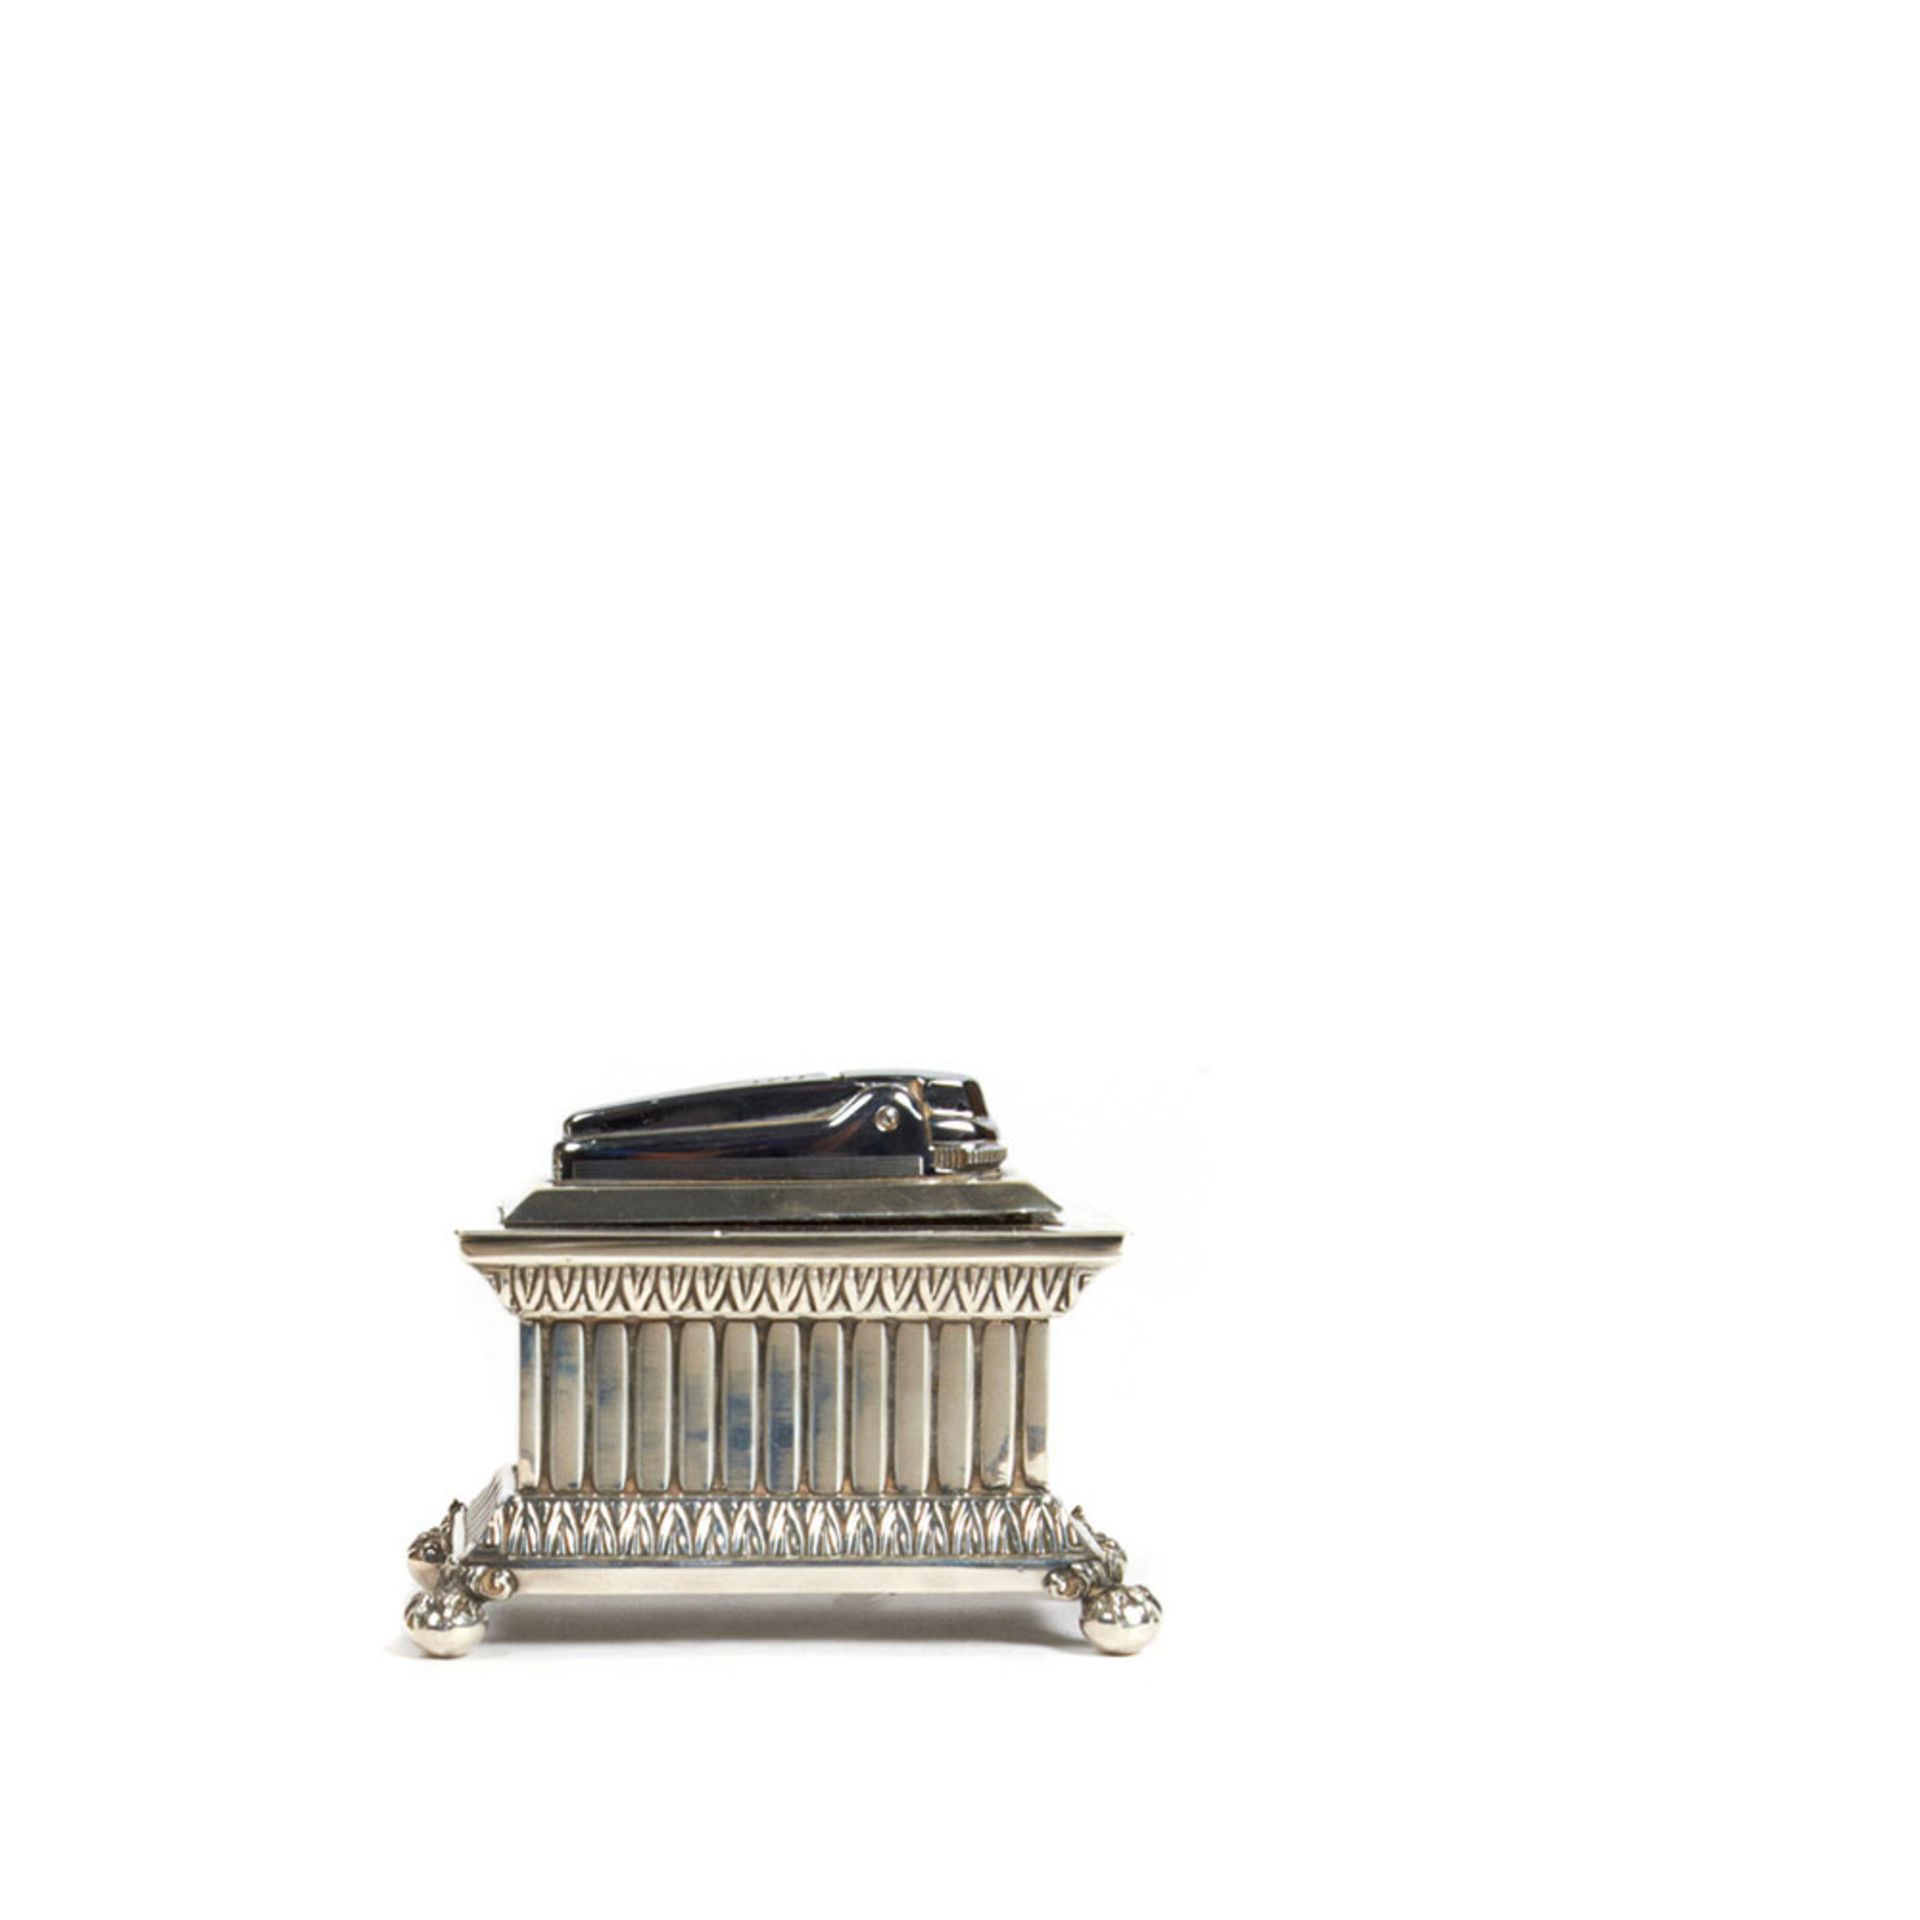 Hallmarked silver Ronson table lighter. Encendedor de sobremesa Ronson diseño arca en plata